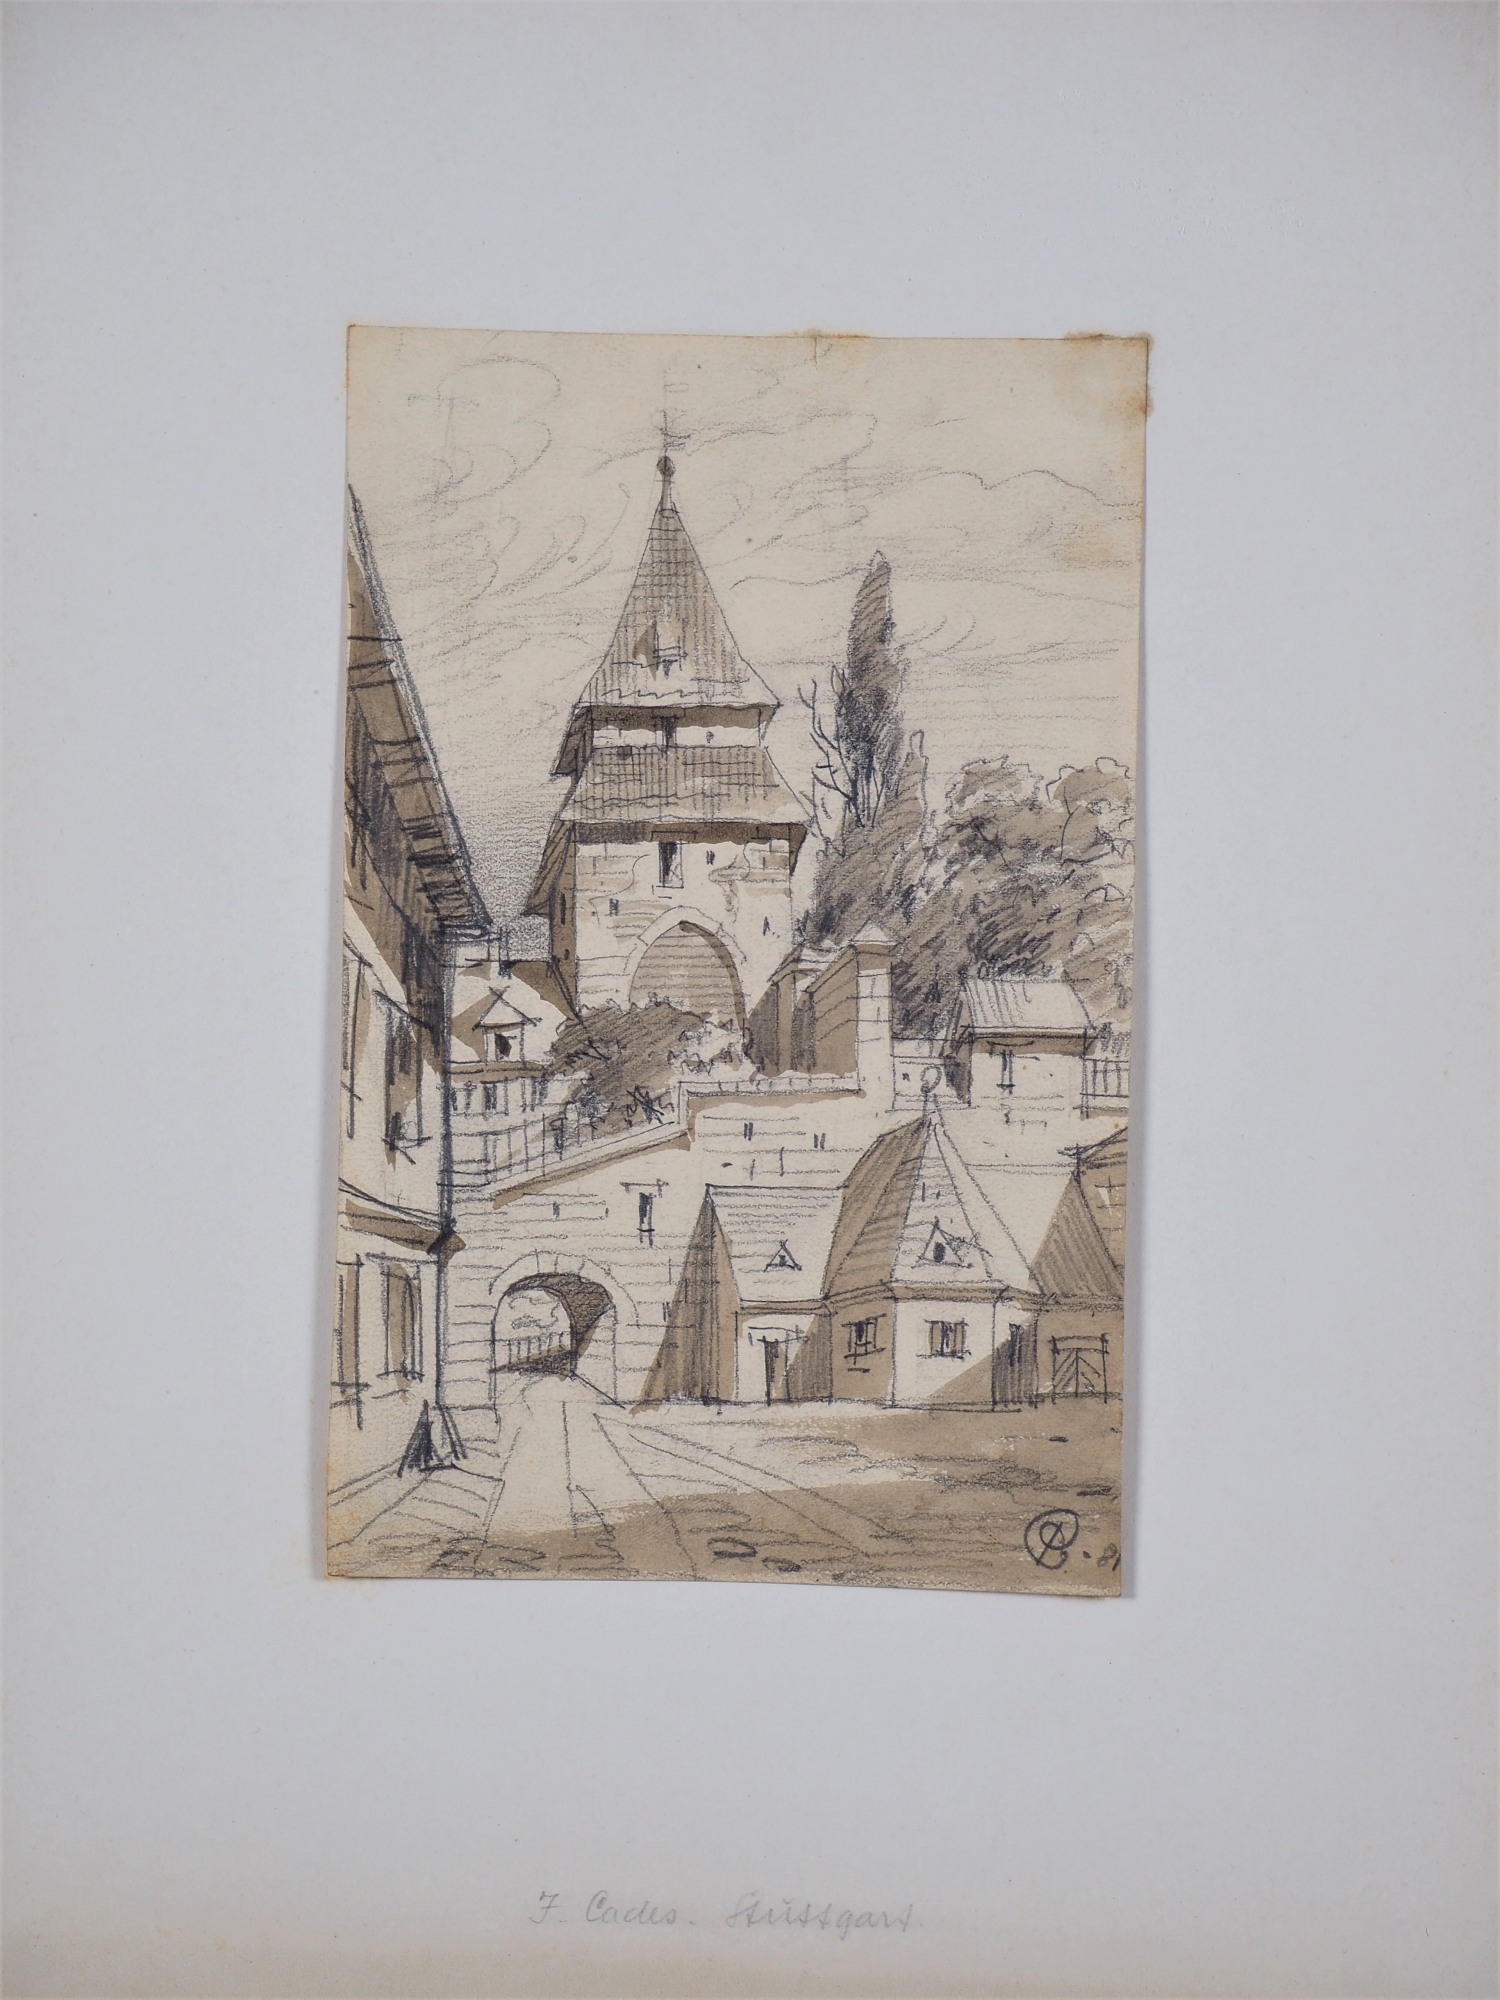 Joseph Cades (1855, Altheim - 1943, Stuttgart) - drawing view Stuttgart, 1881